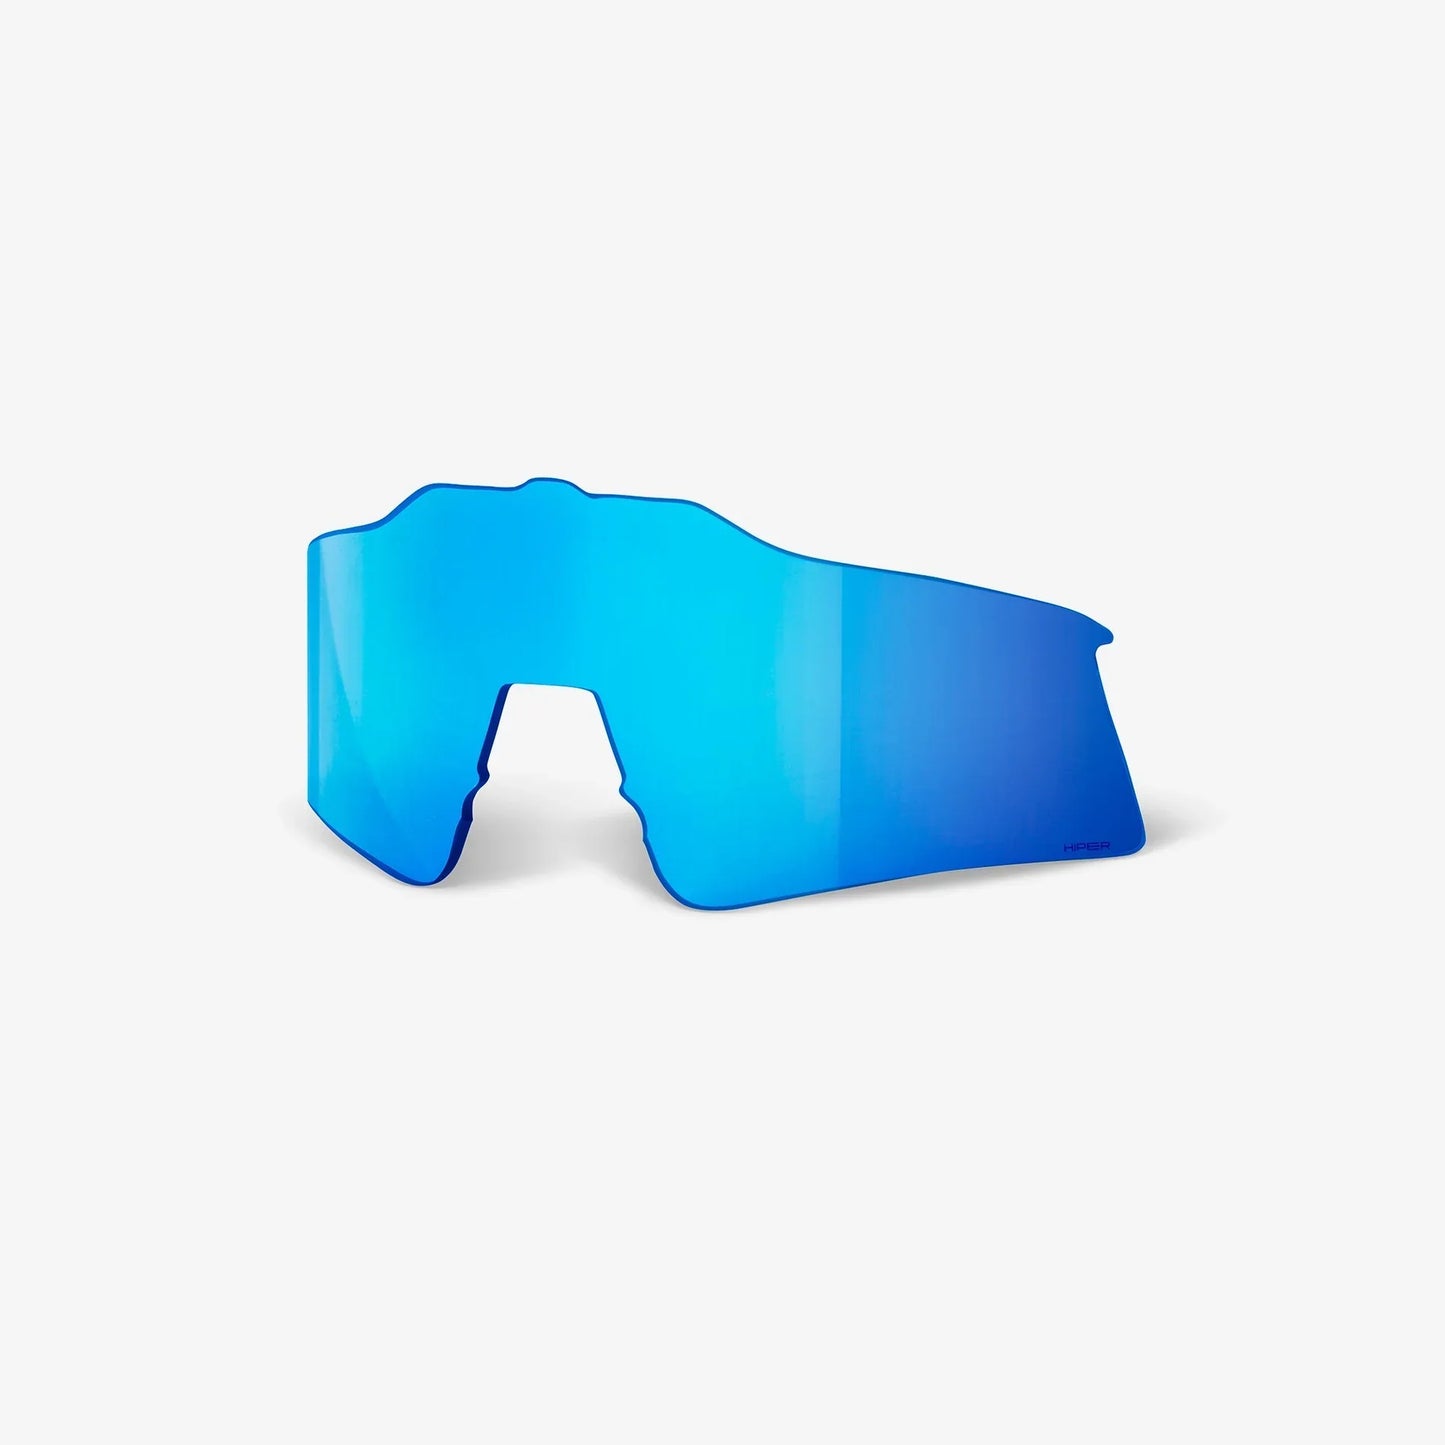 100% - SPEEDCRAFT SL Matte White/Metallic Blue - HiPER Blue Multilayer Mirror Lens - Team Store